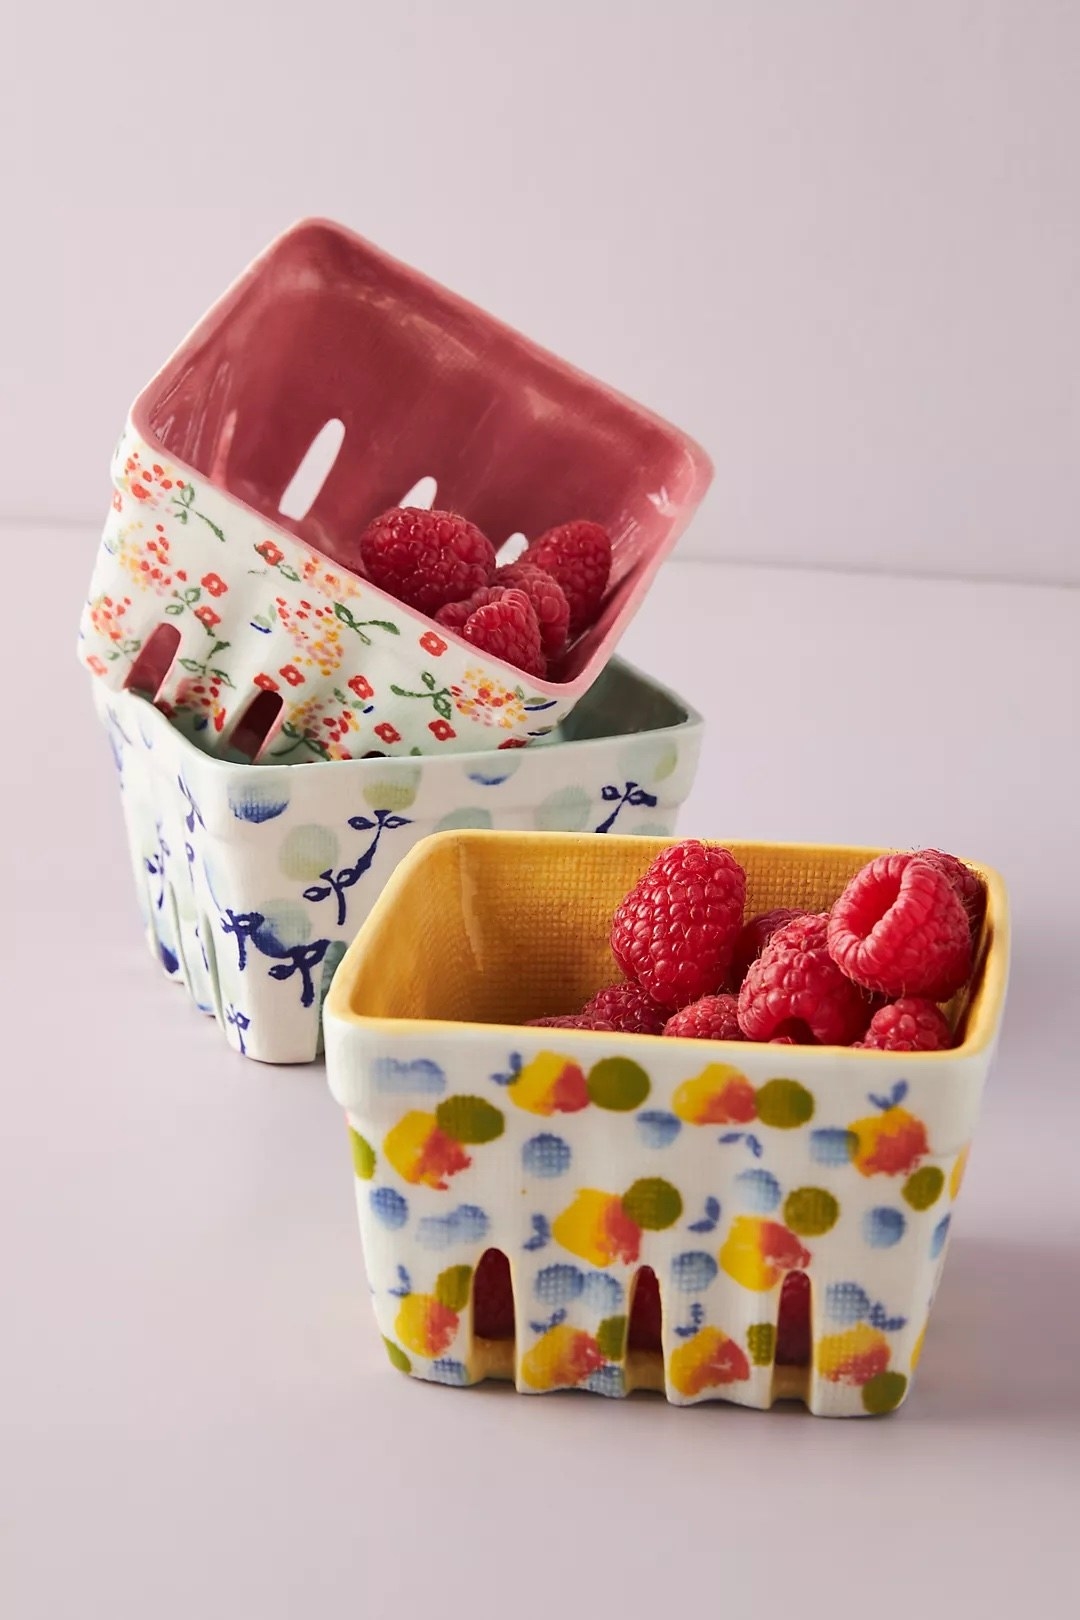 Raspberries in berry basket